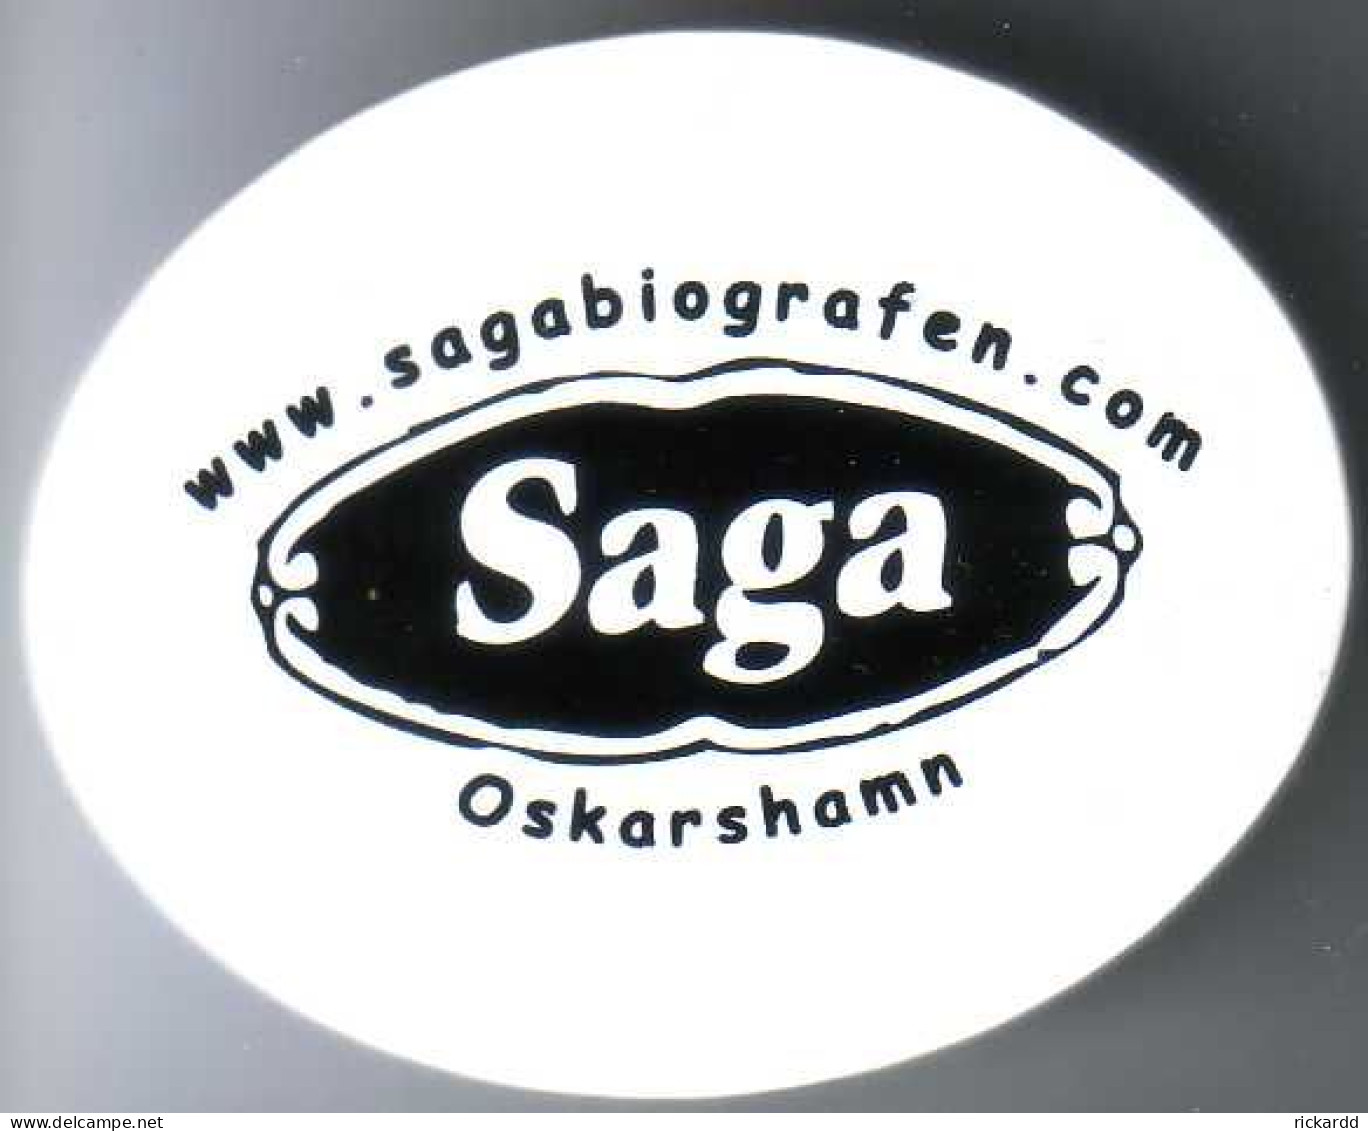 Kitchenmagnet - Saga Oskarshamn - Magnete